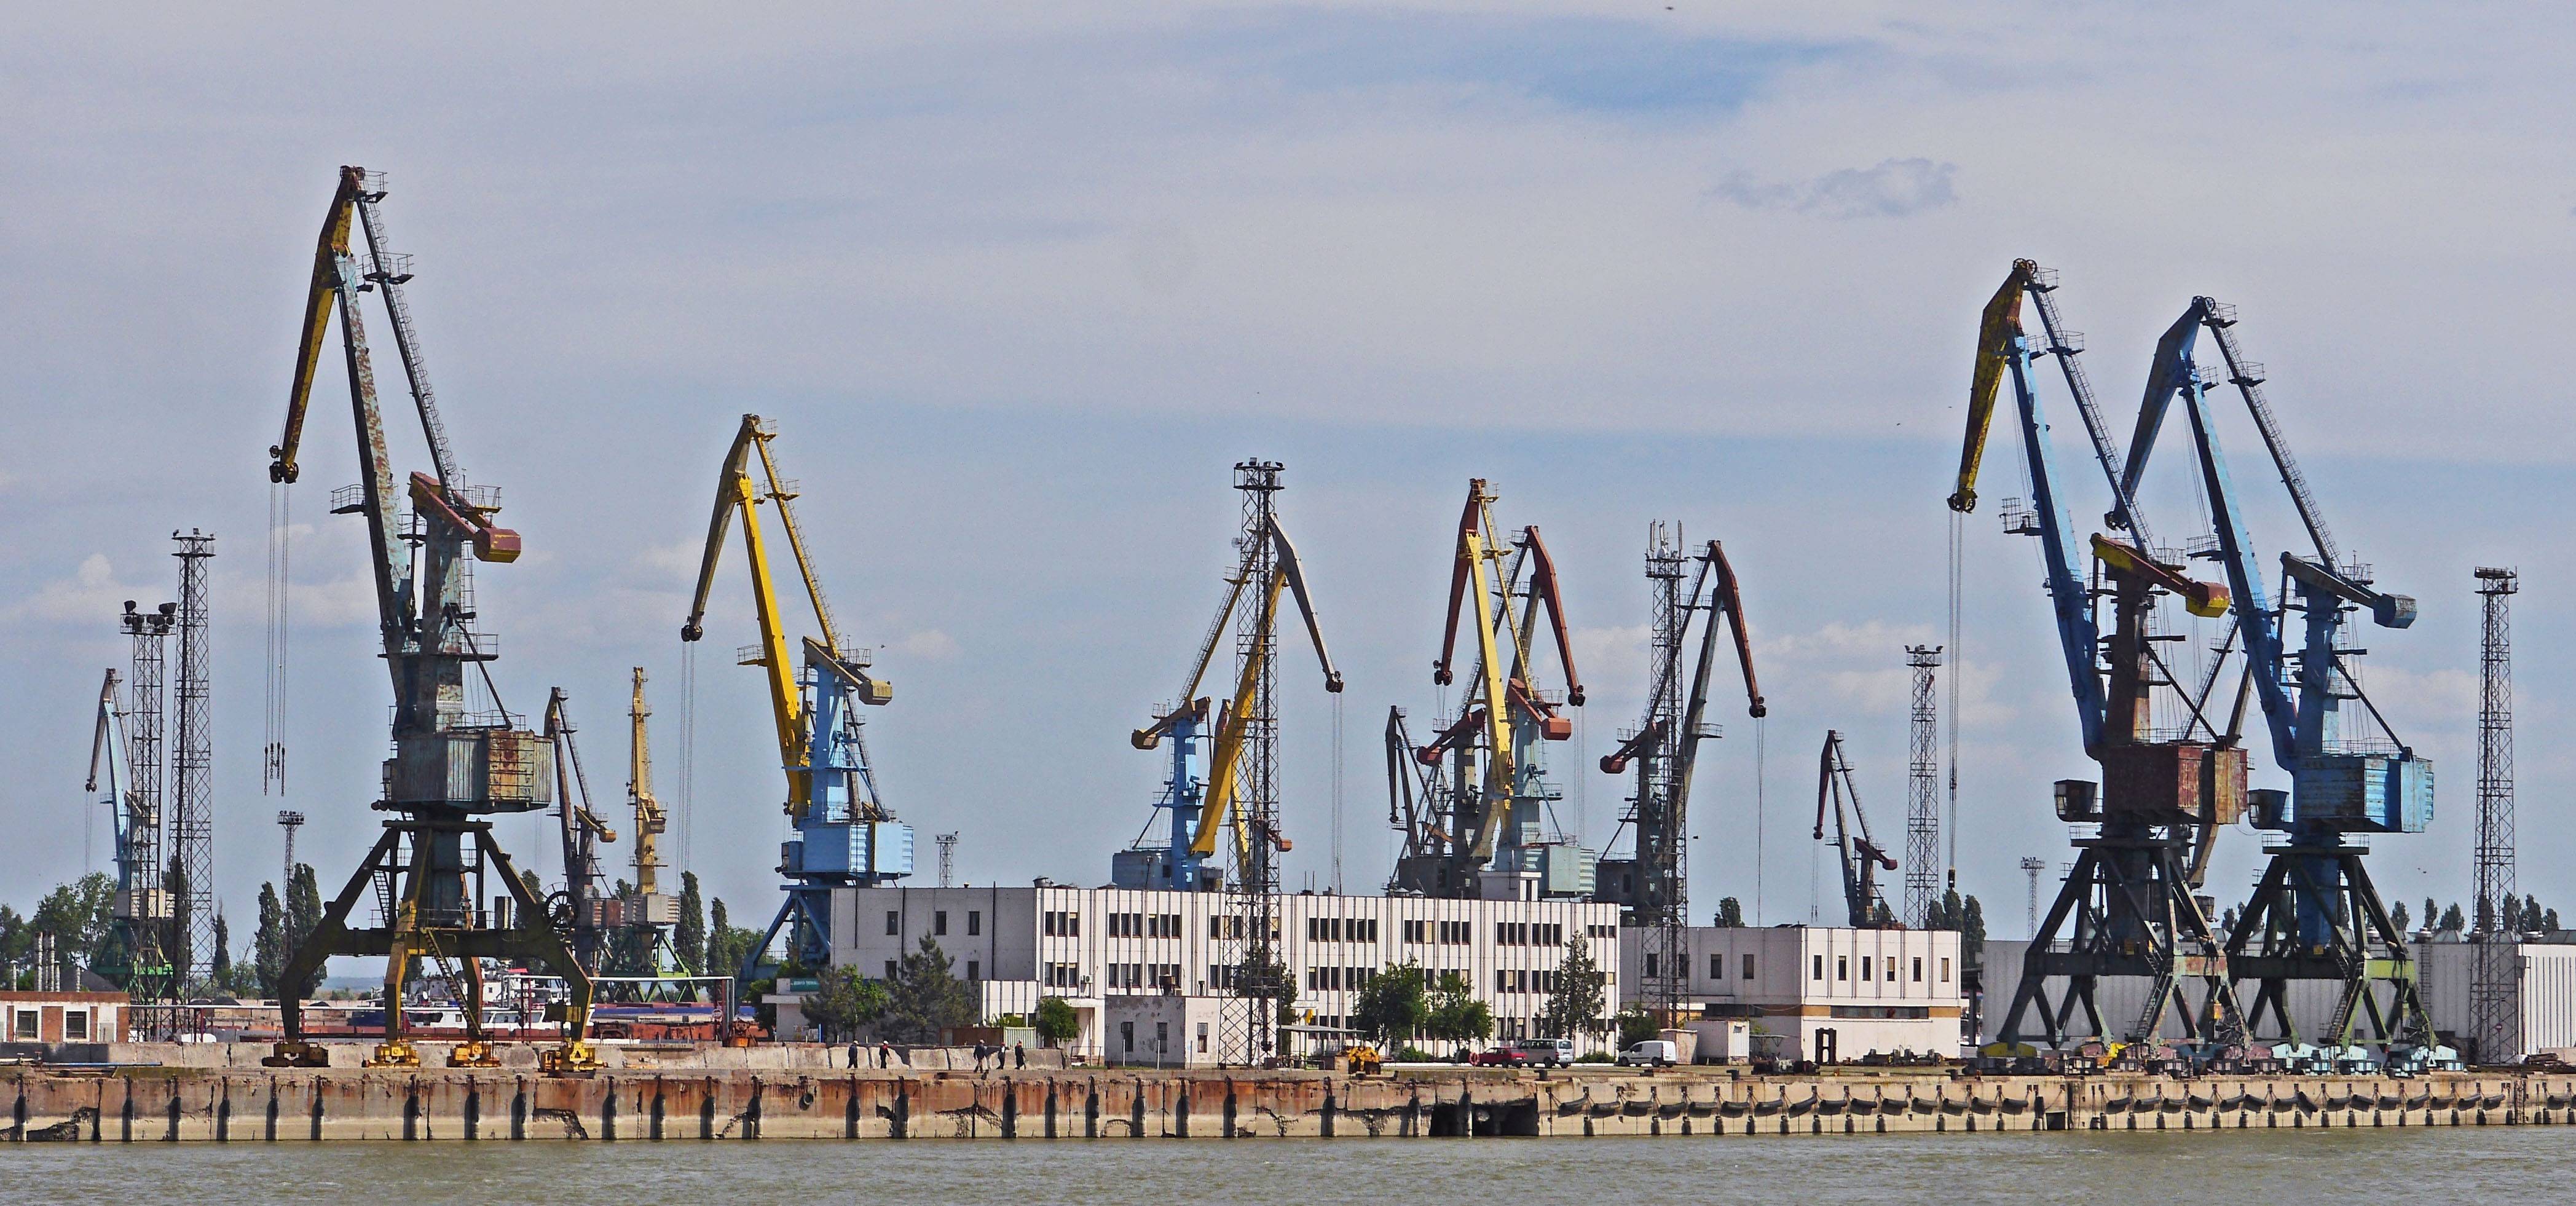 Free Images : harbour cranes, lower danube, reni, ukraine, investors ...